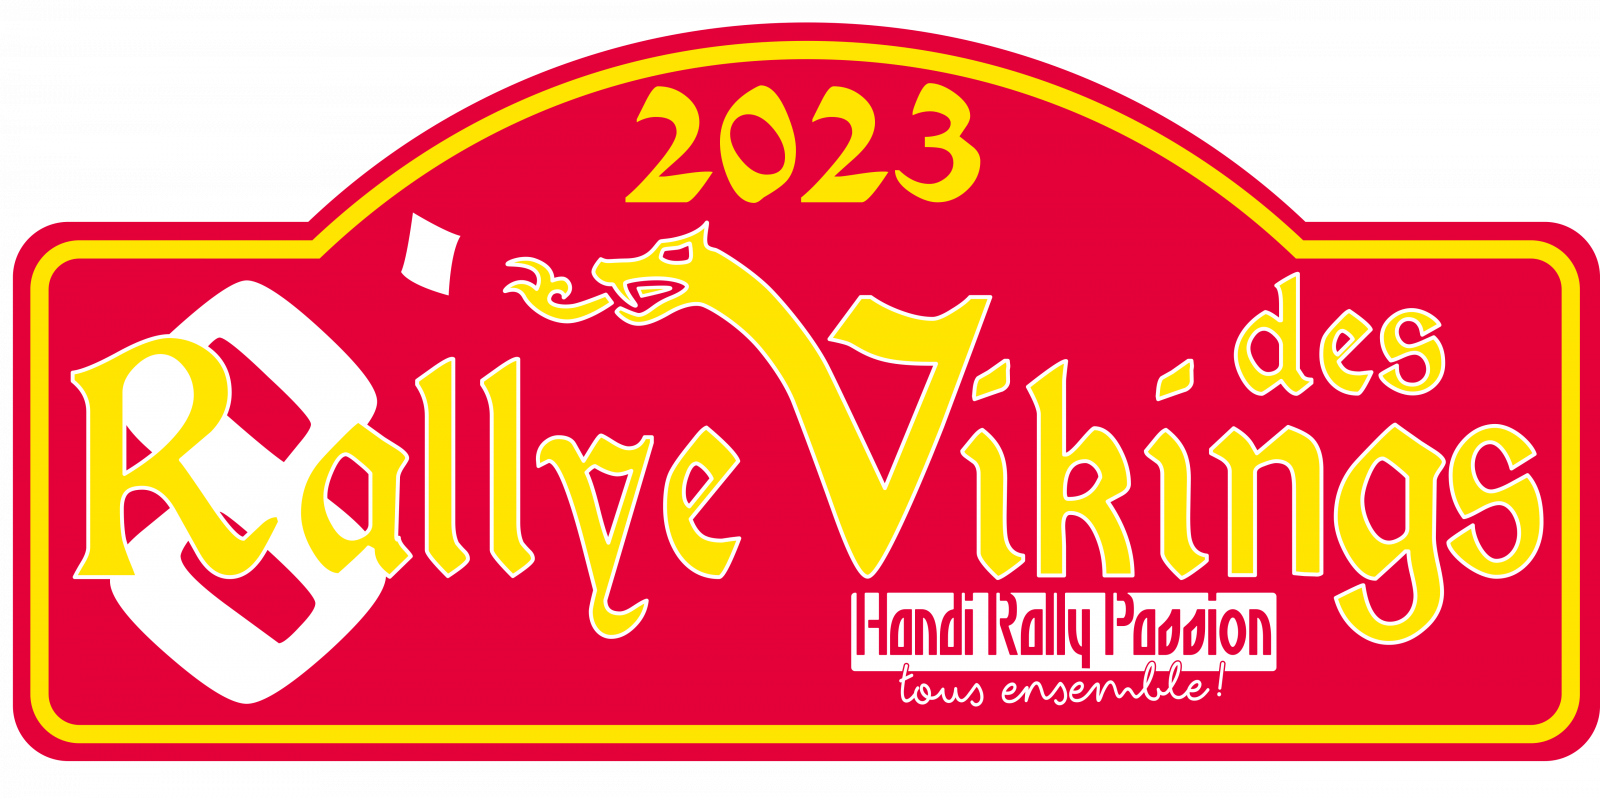 Rallye des Viking_le 3 juin 2023 Logo